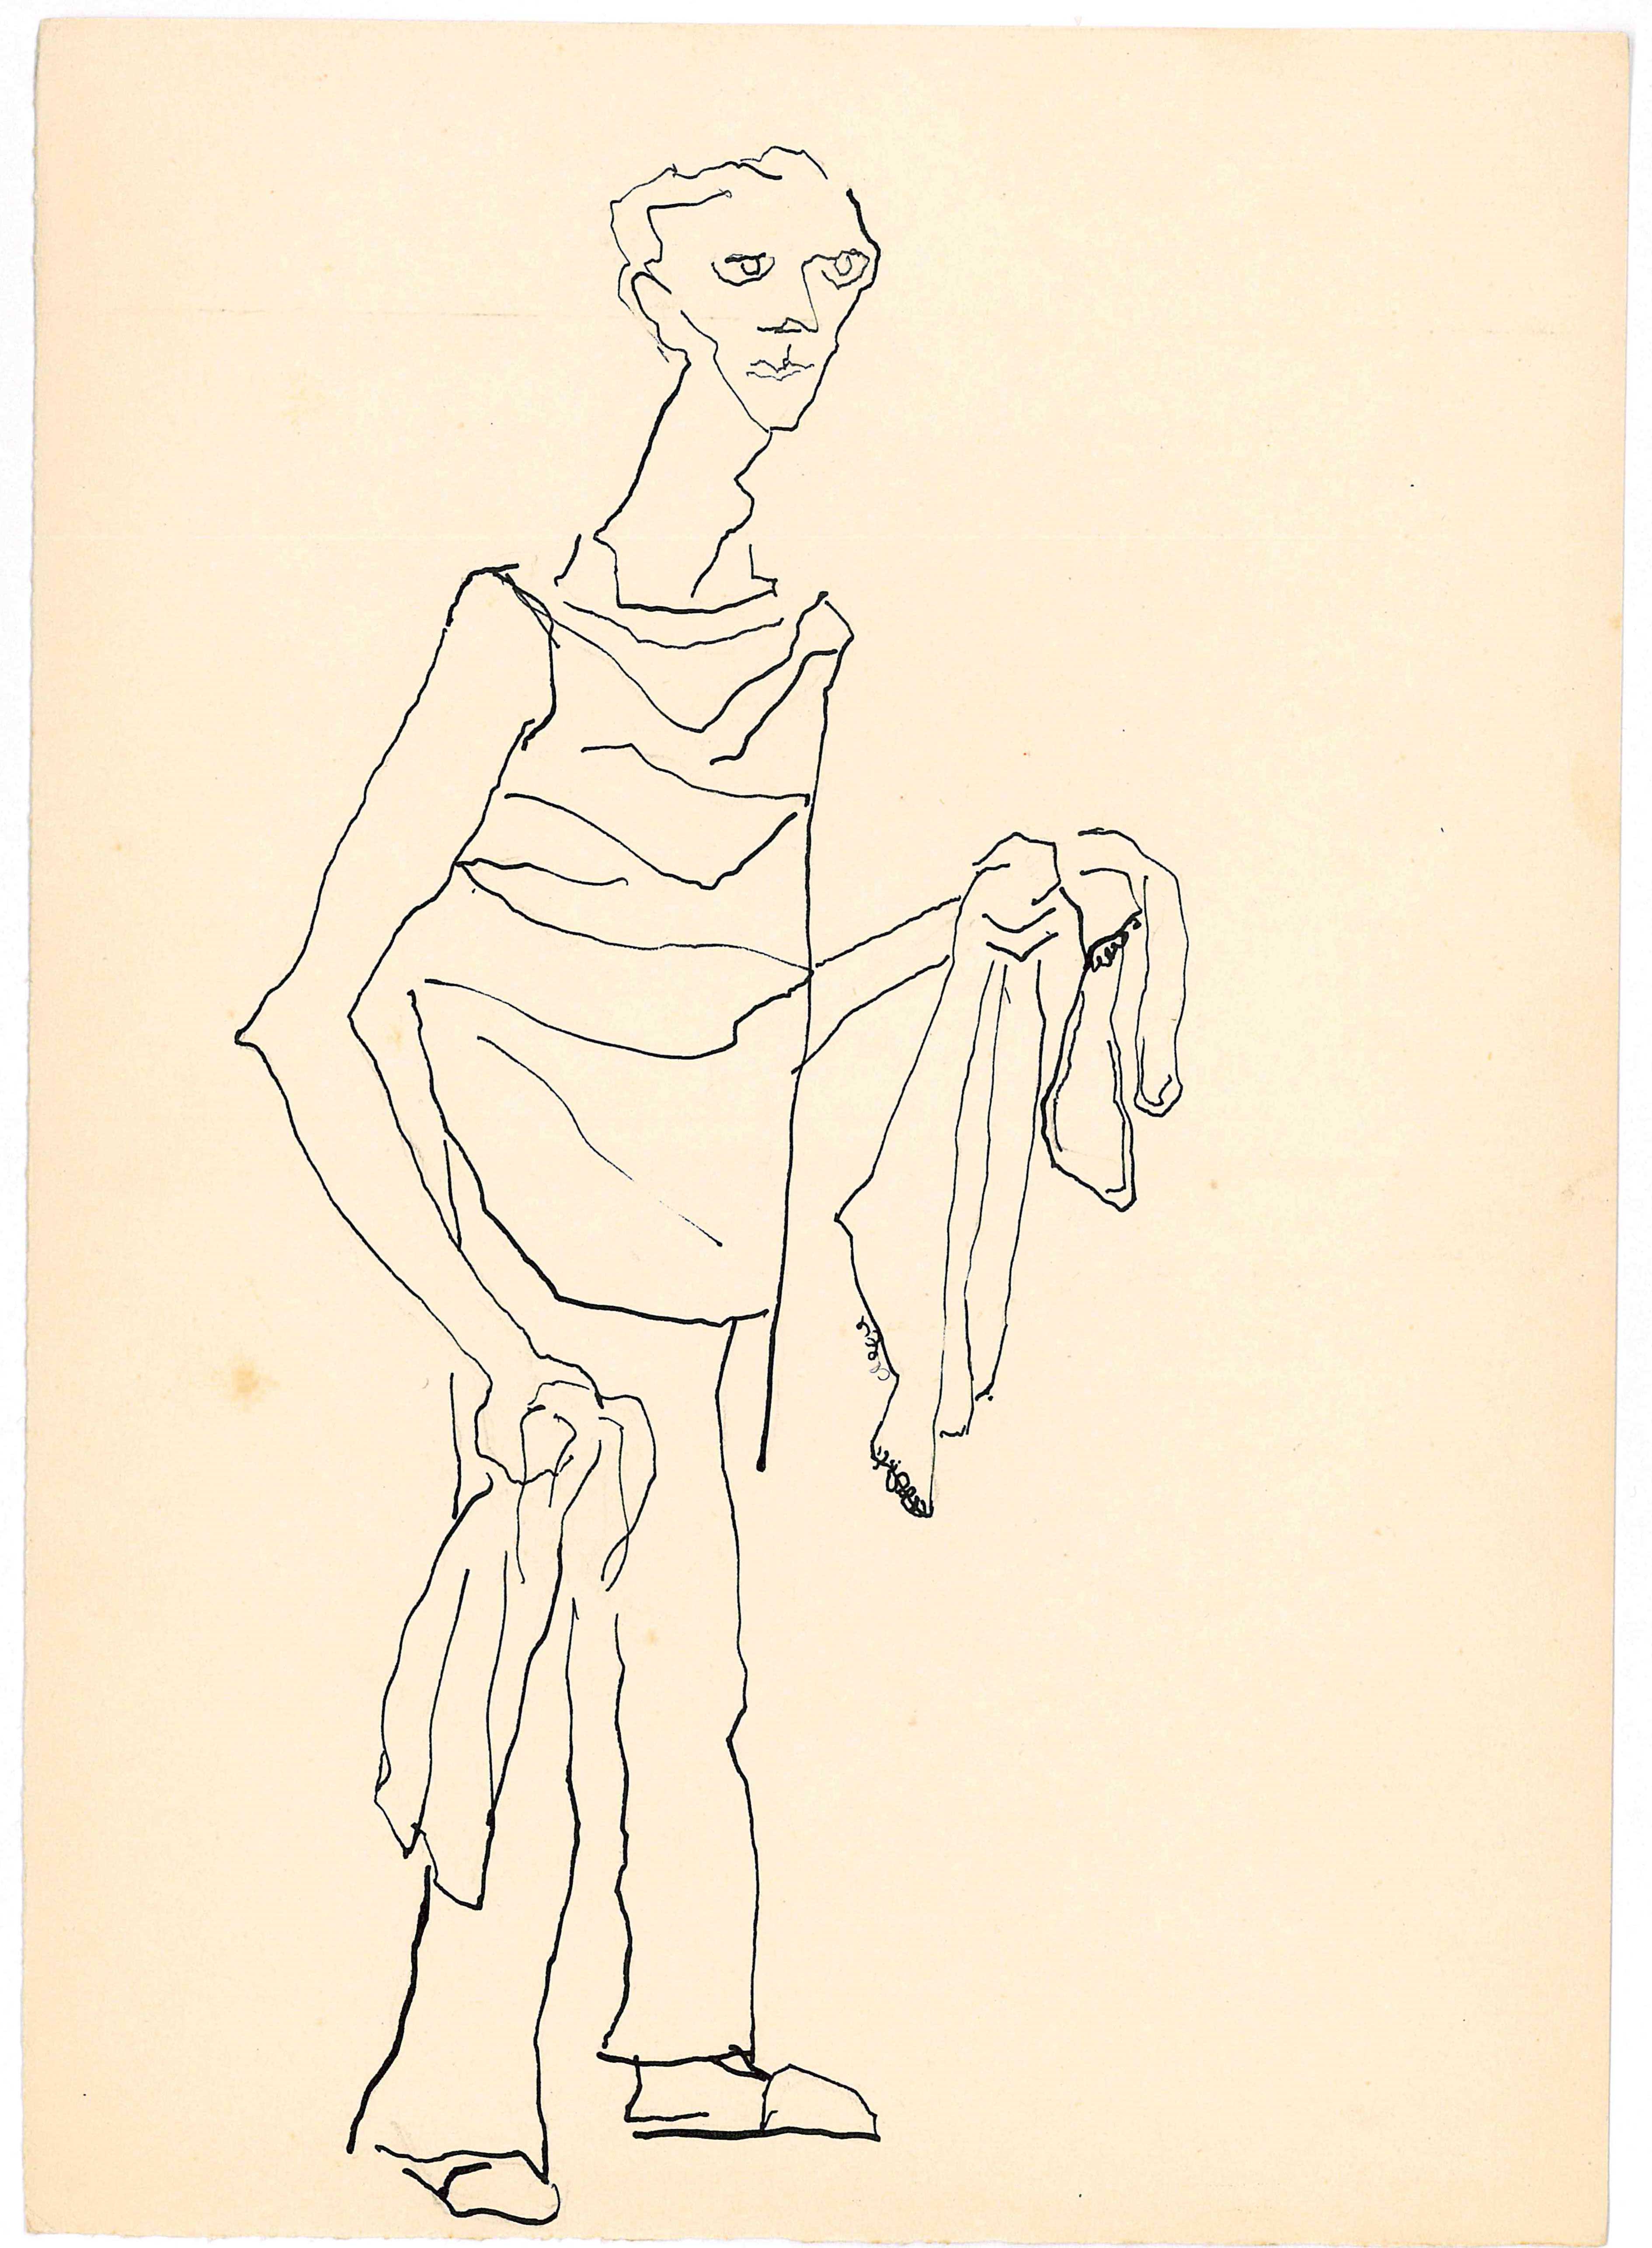 Christa Jeitner, zu Jean Gionos "Der Träumer", 1960, Feder in Tusche auf Papier © Christa Jeitner, Foto: BLMK